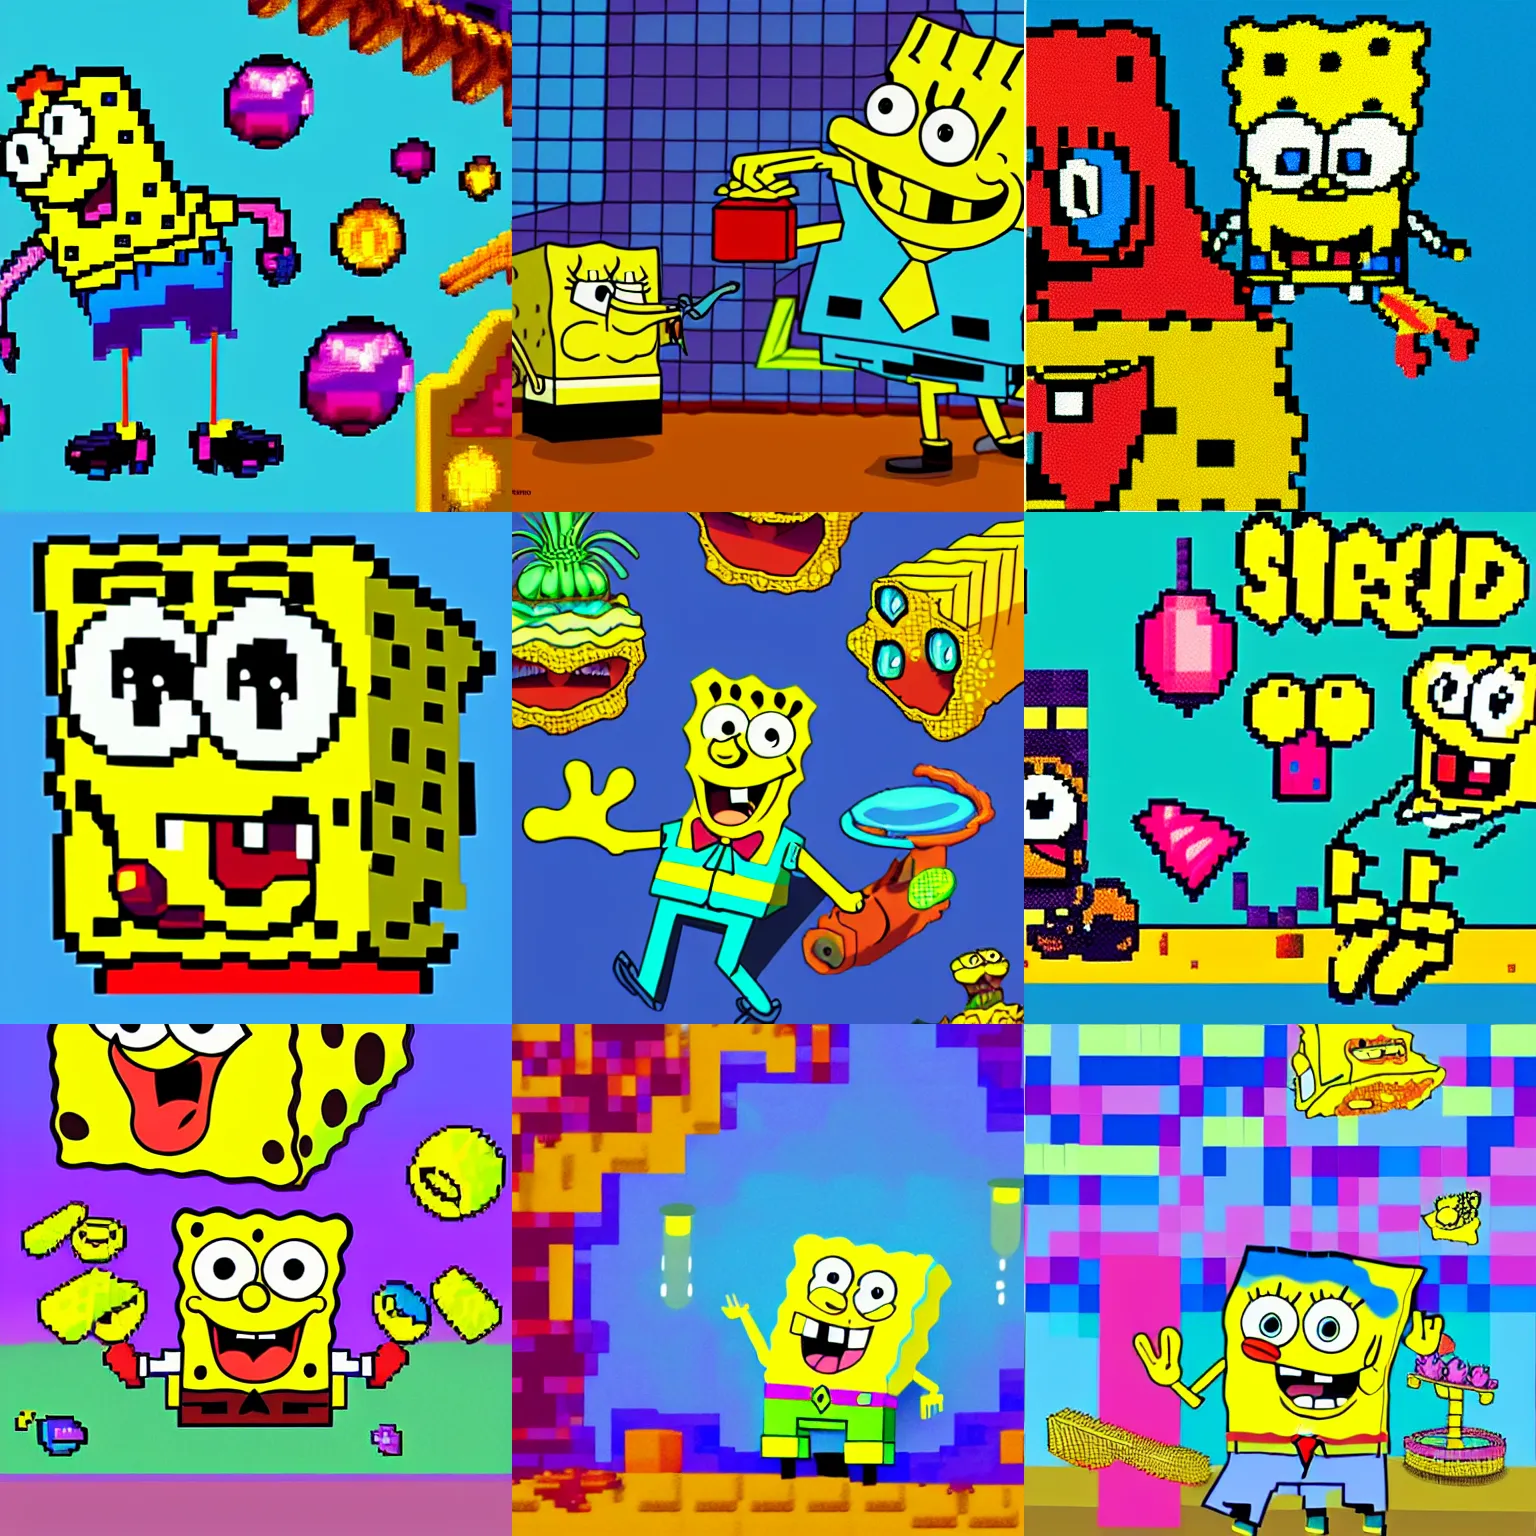 Prompt: spongebob, colorful, fantastic lighting, pixel art, 1 6 bits, 2 d